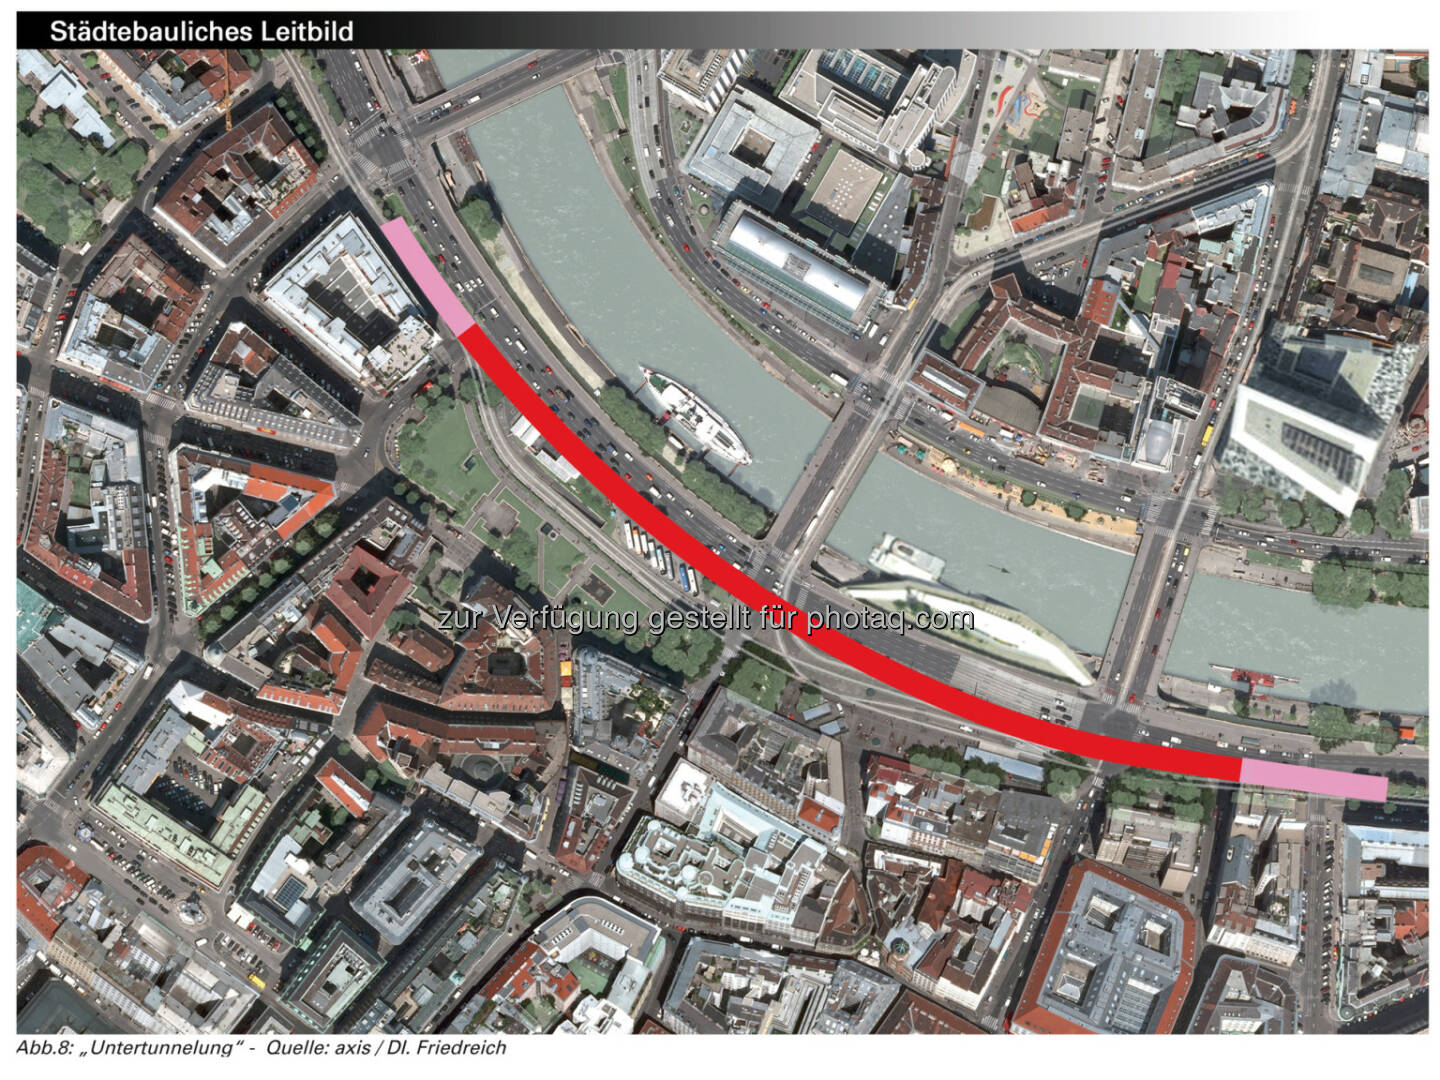 Schwedenplatz, Bezirksvorstehung Innere Stadt: City Tunnel - Großzügiger neuer Platz durch Untertunnelung - axis/DI. Friedreich